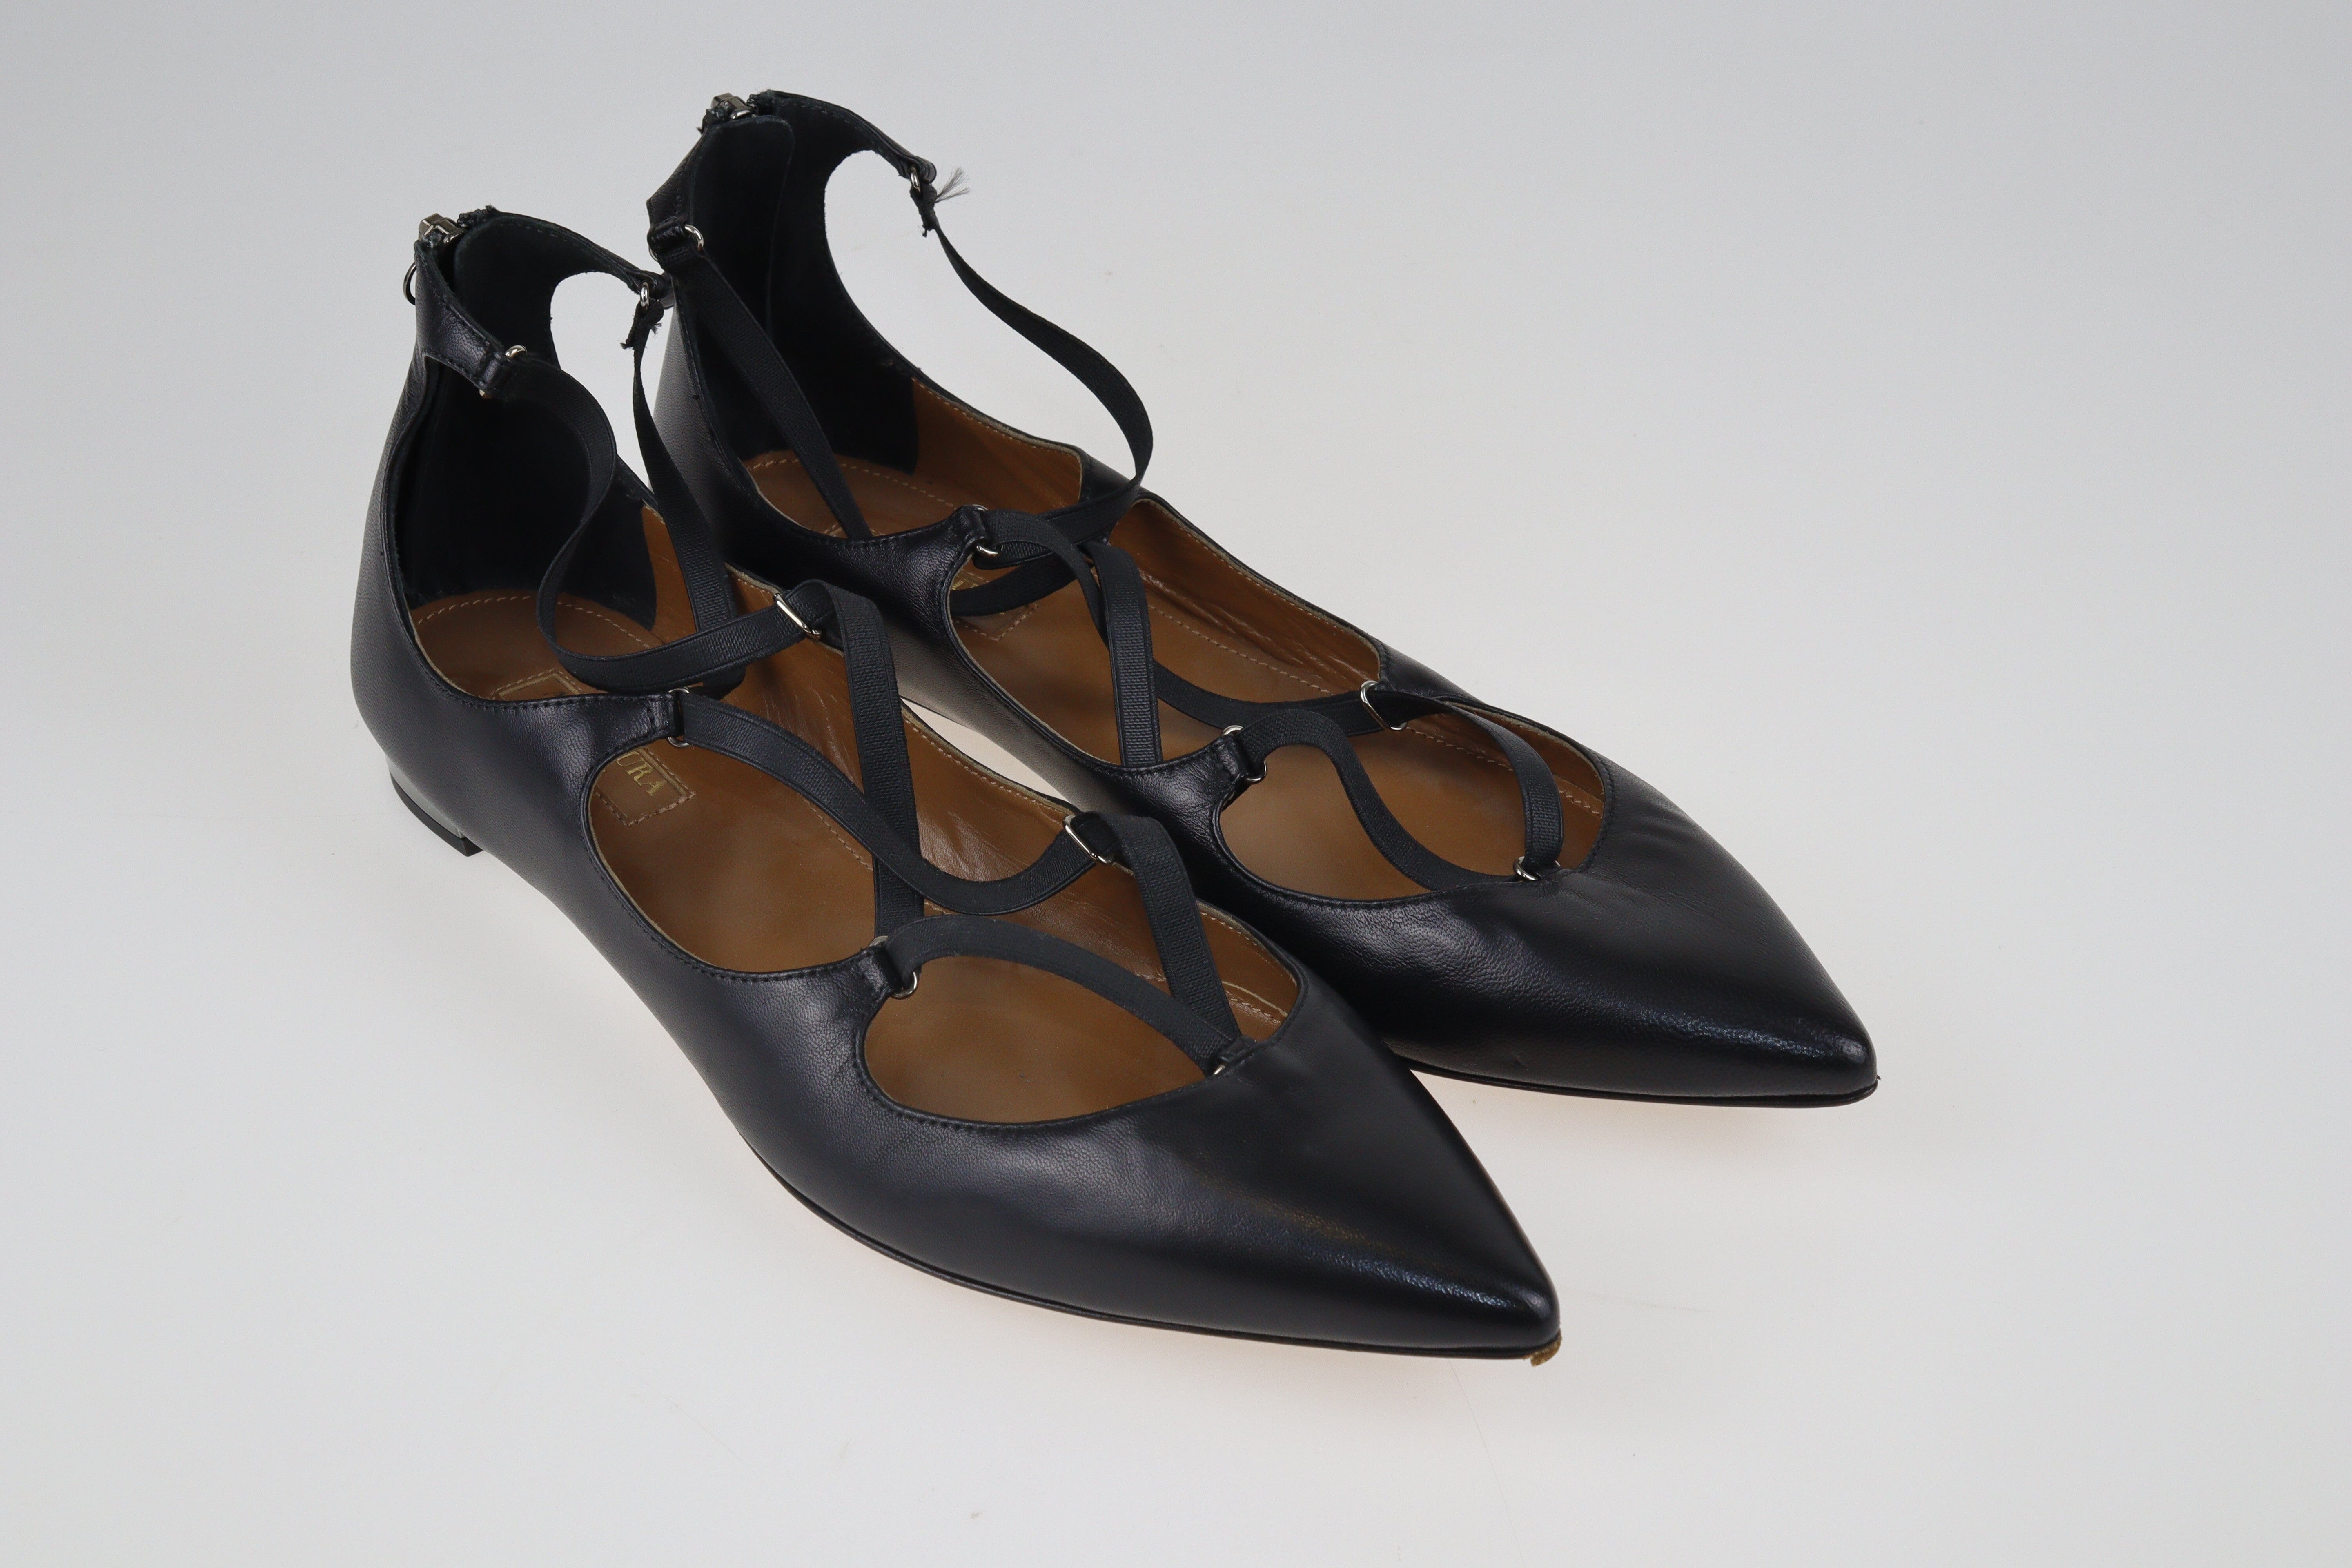 Black Cross Strap Ballet Flats Shoes Aquazzura 